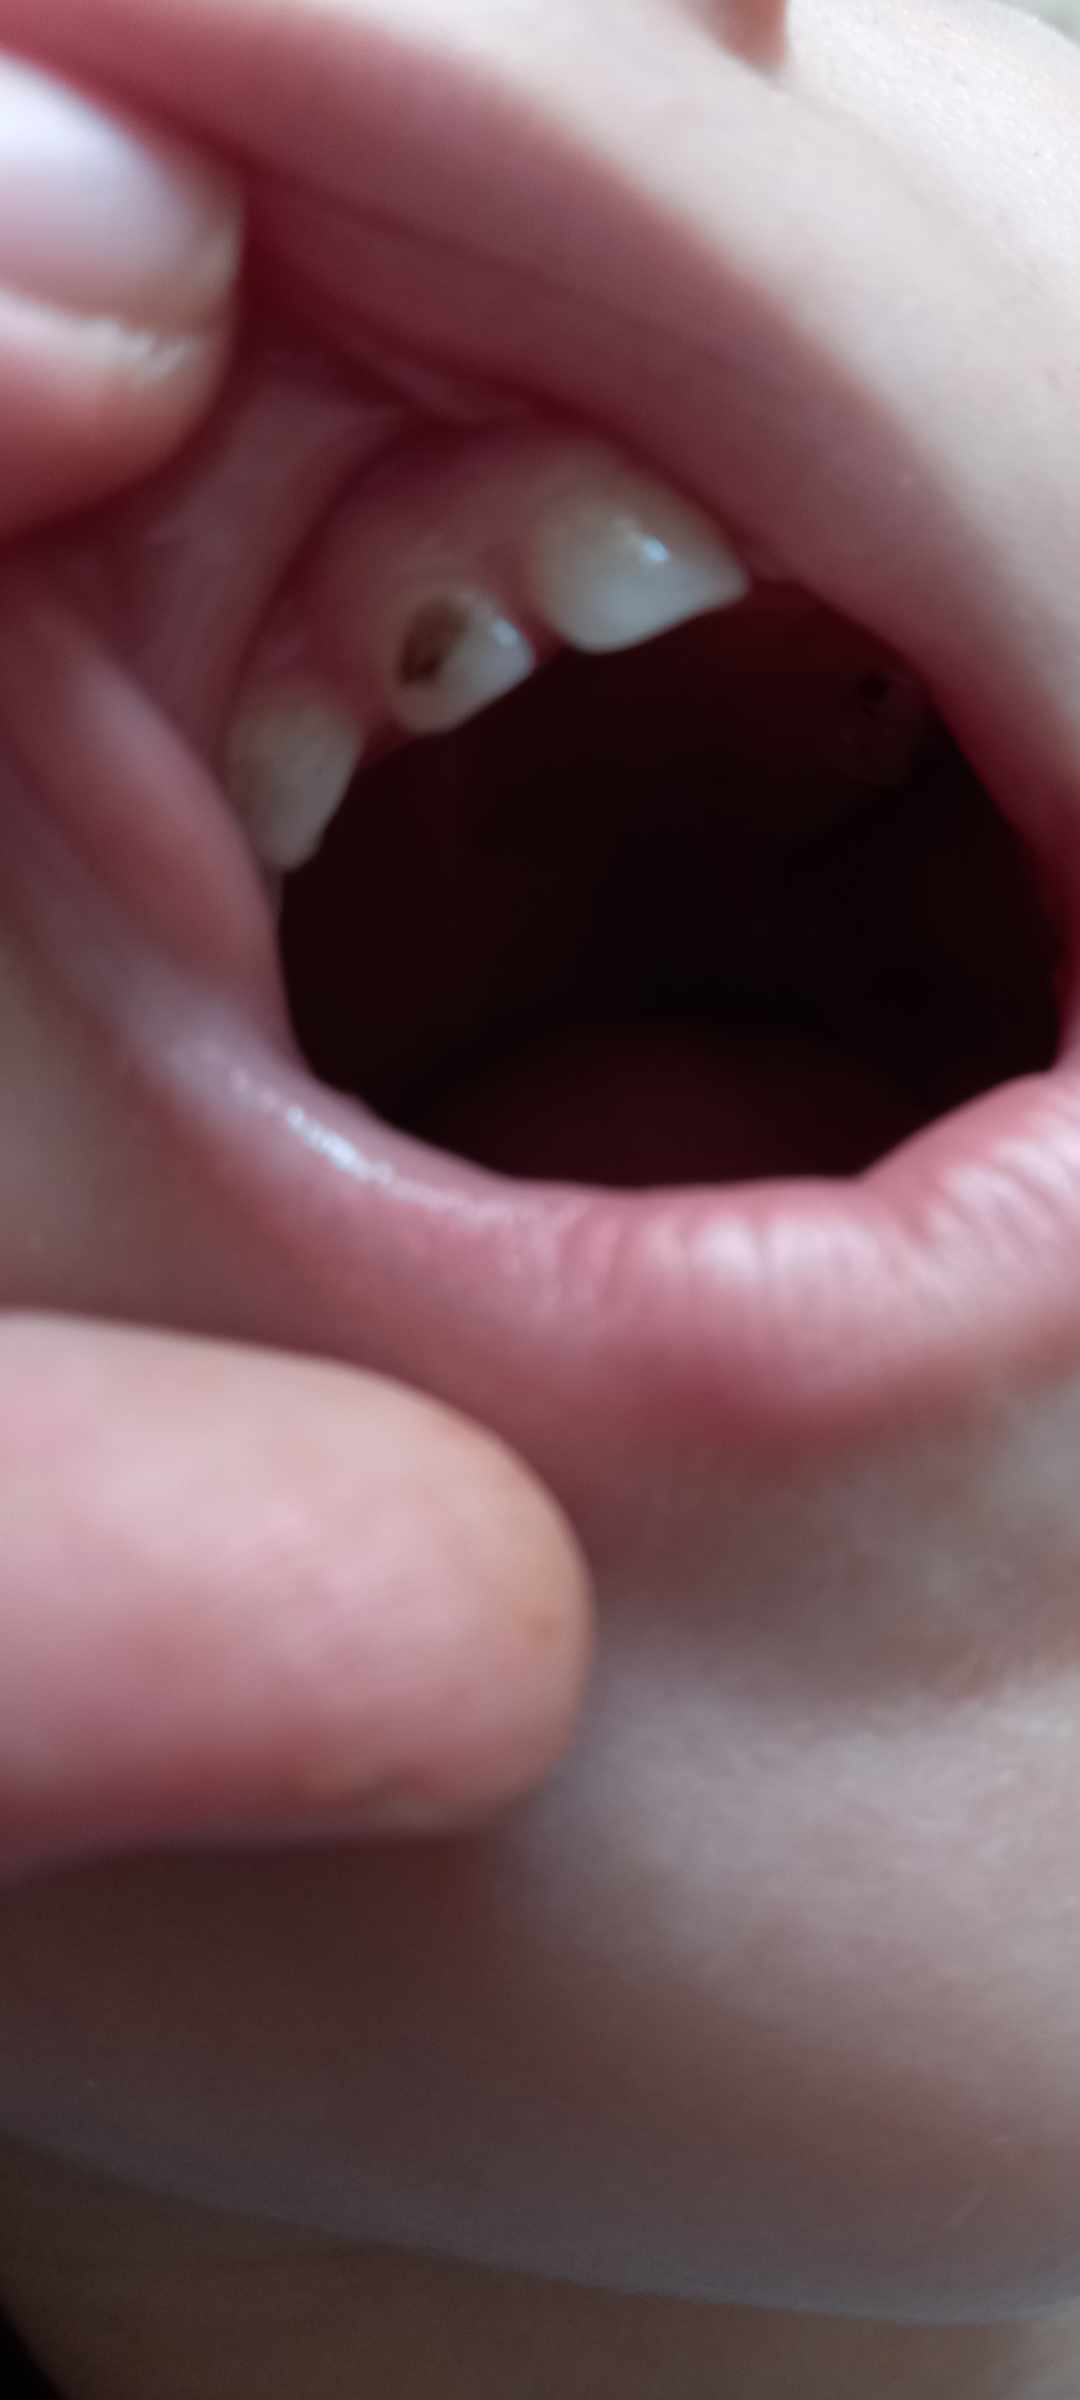 أسباب ظهور بقع سوداء على أسنان الأطفال